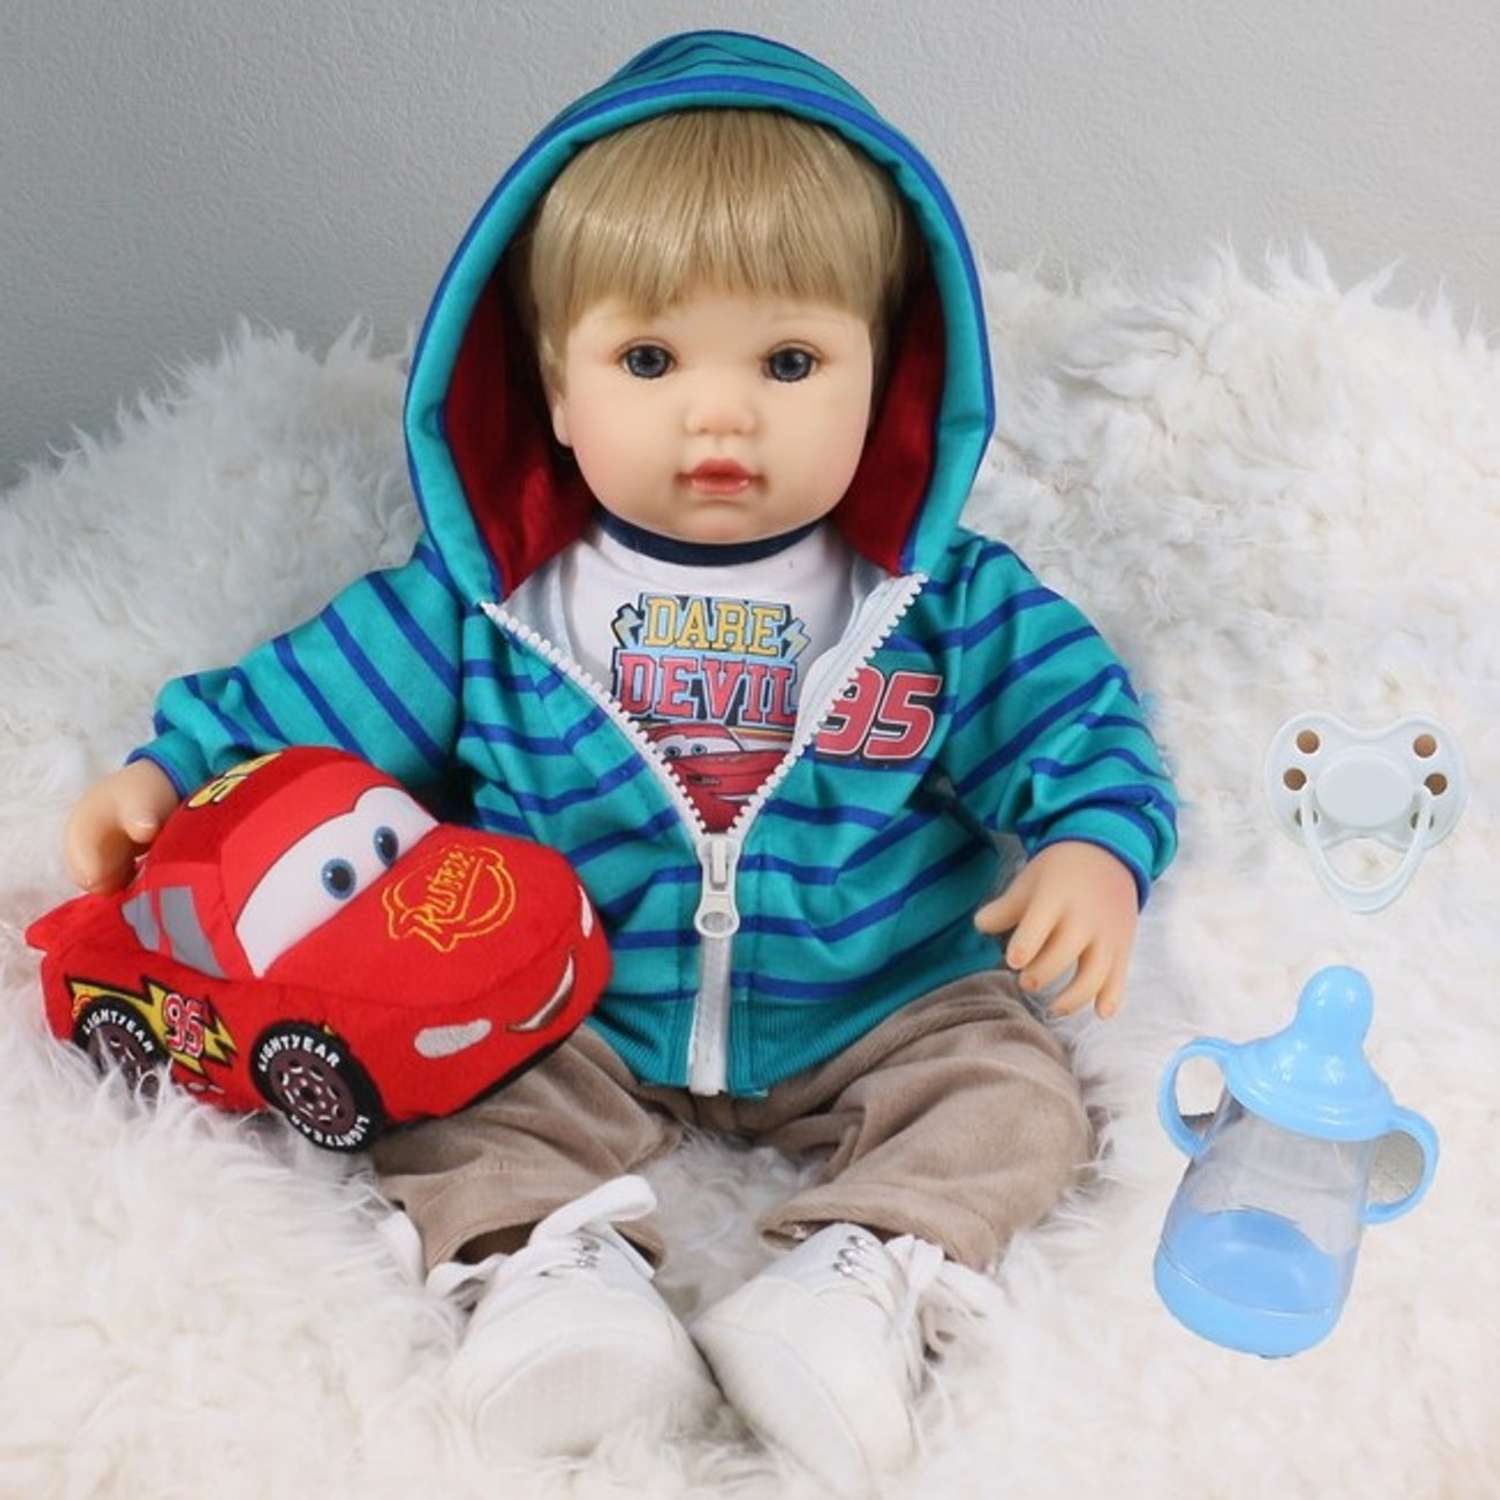 Кукла Реборн QA BABY Мишель мальчик большой пупс набор игрушки для девочки 42 см 45009 - фото 1